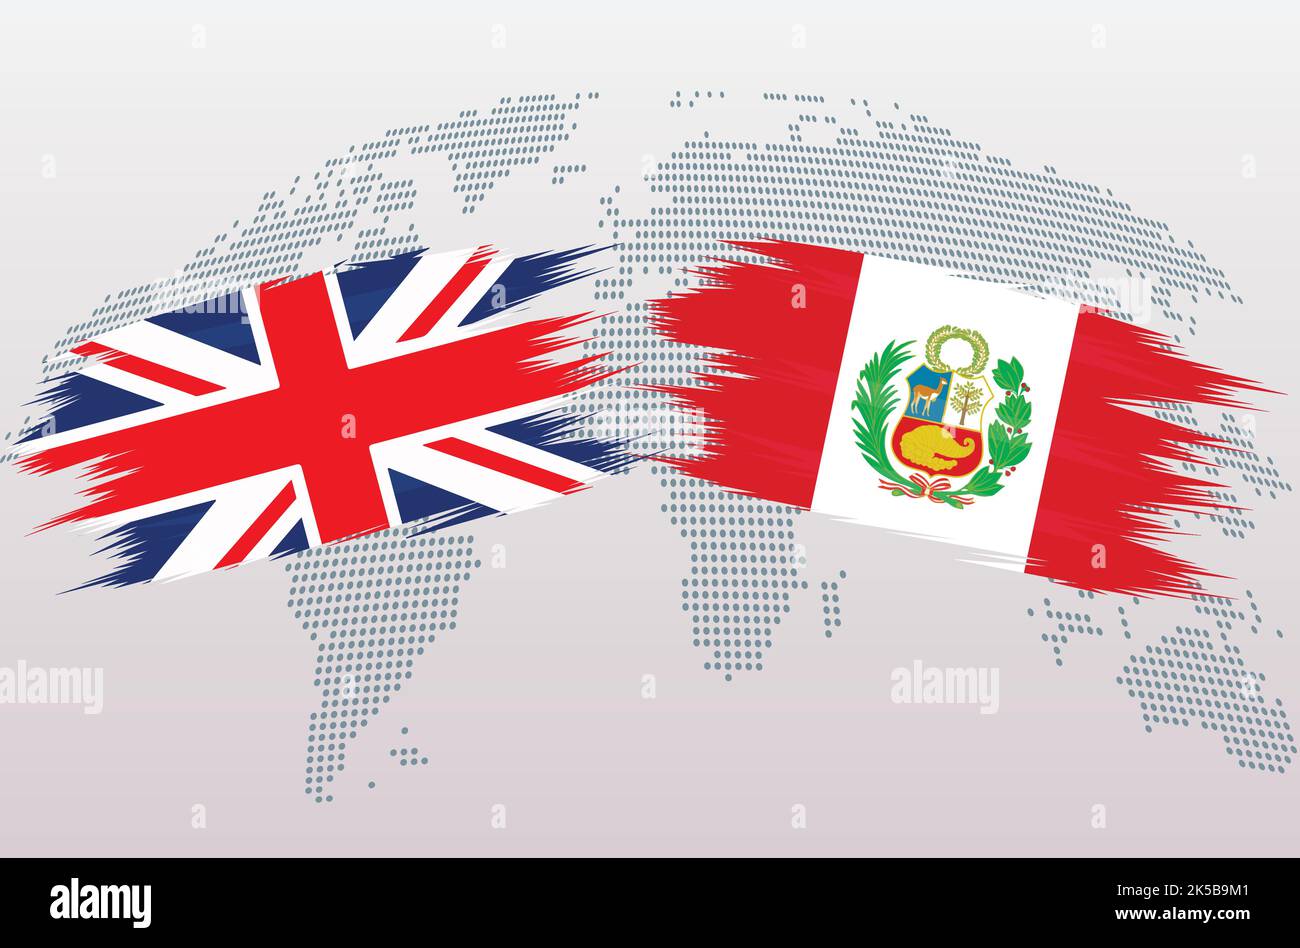 Bandiere britanniche e PERUVIANE. Le bandiere del Regno Unito e DEL PERÙ, isolate su sfondo grigio della mappa del mondo. Illustrazione vettoriale. Illustrazione Vettoriale